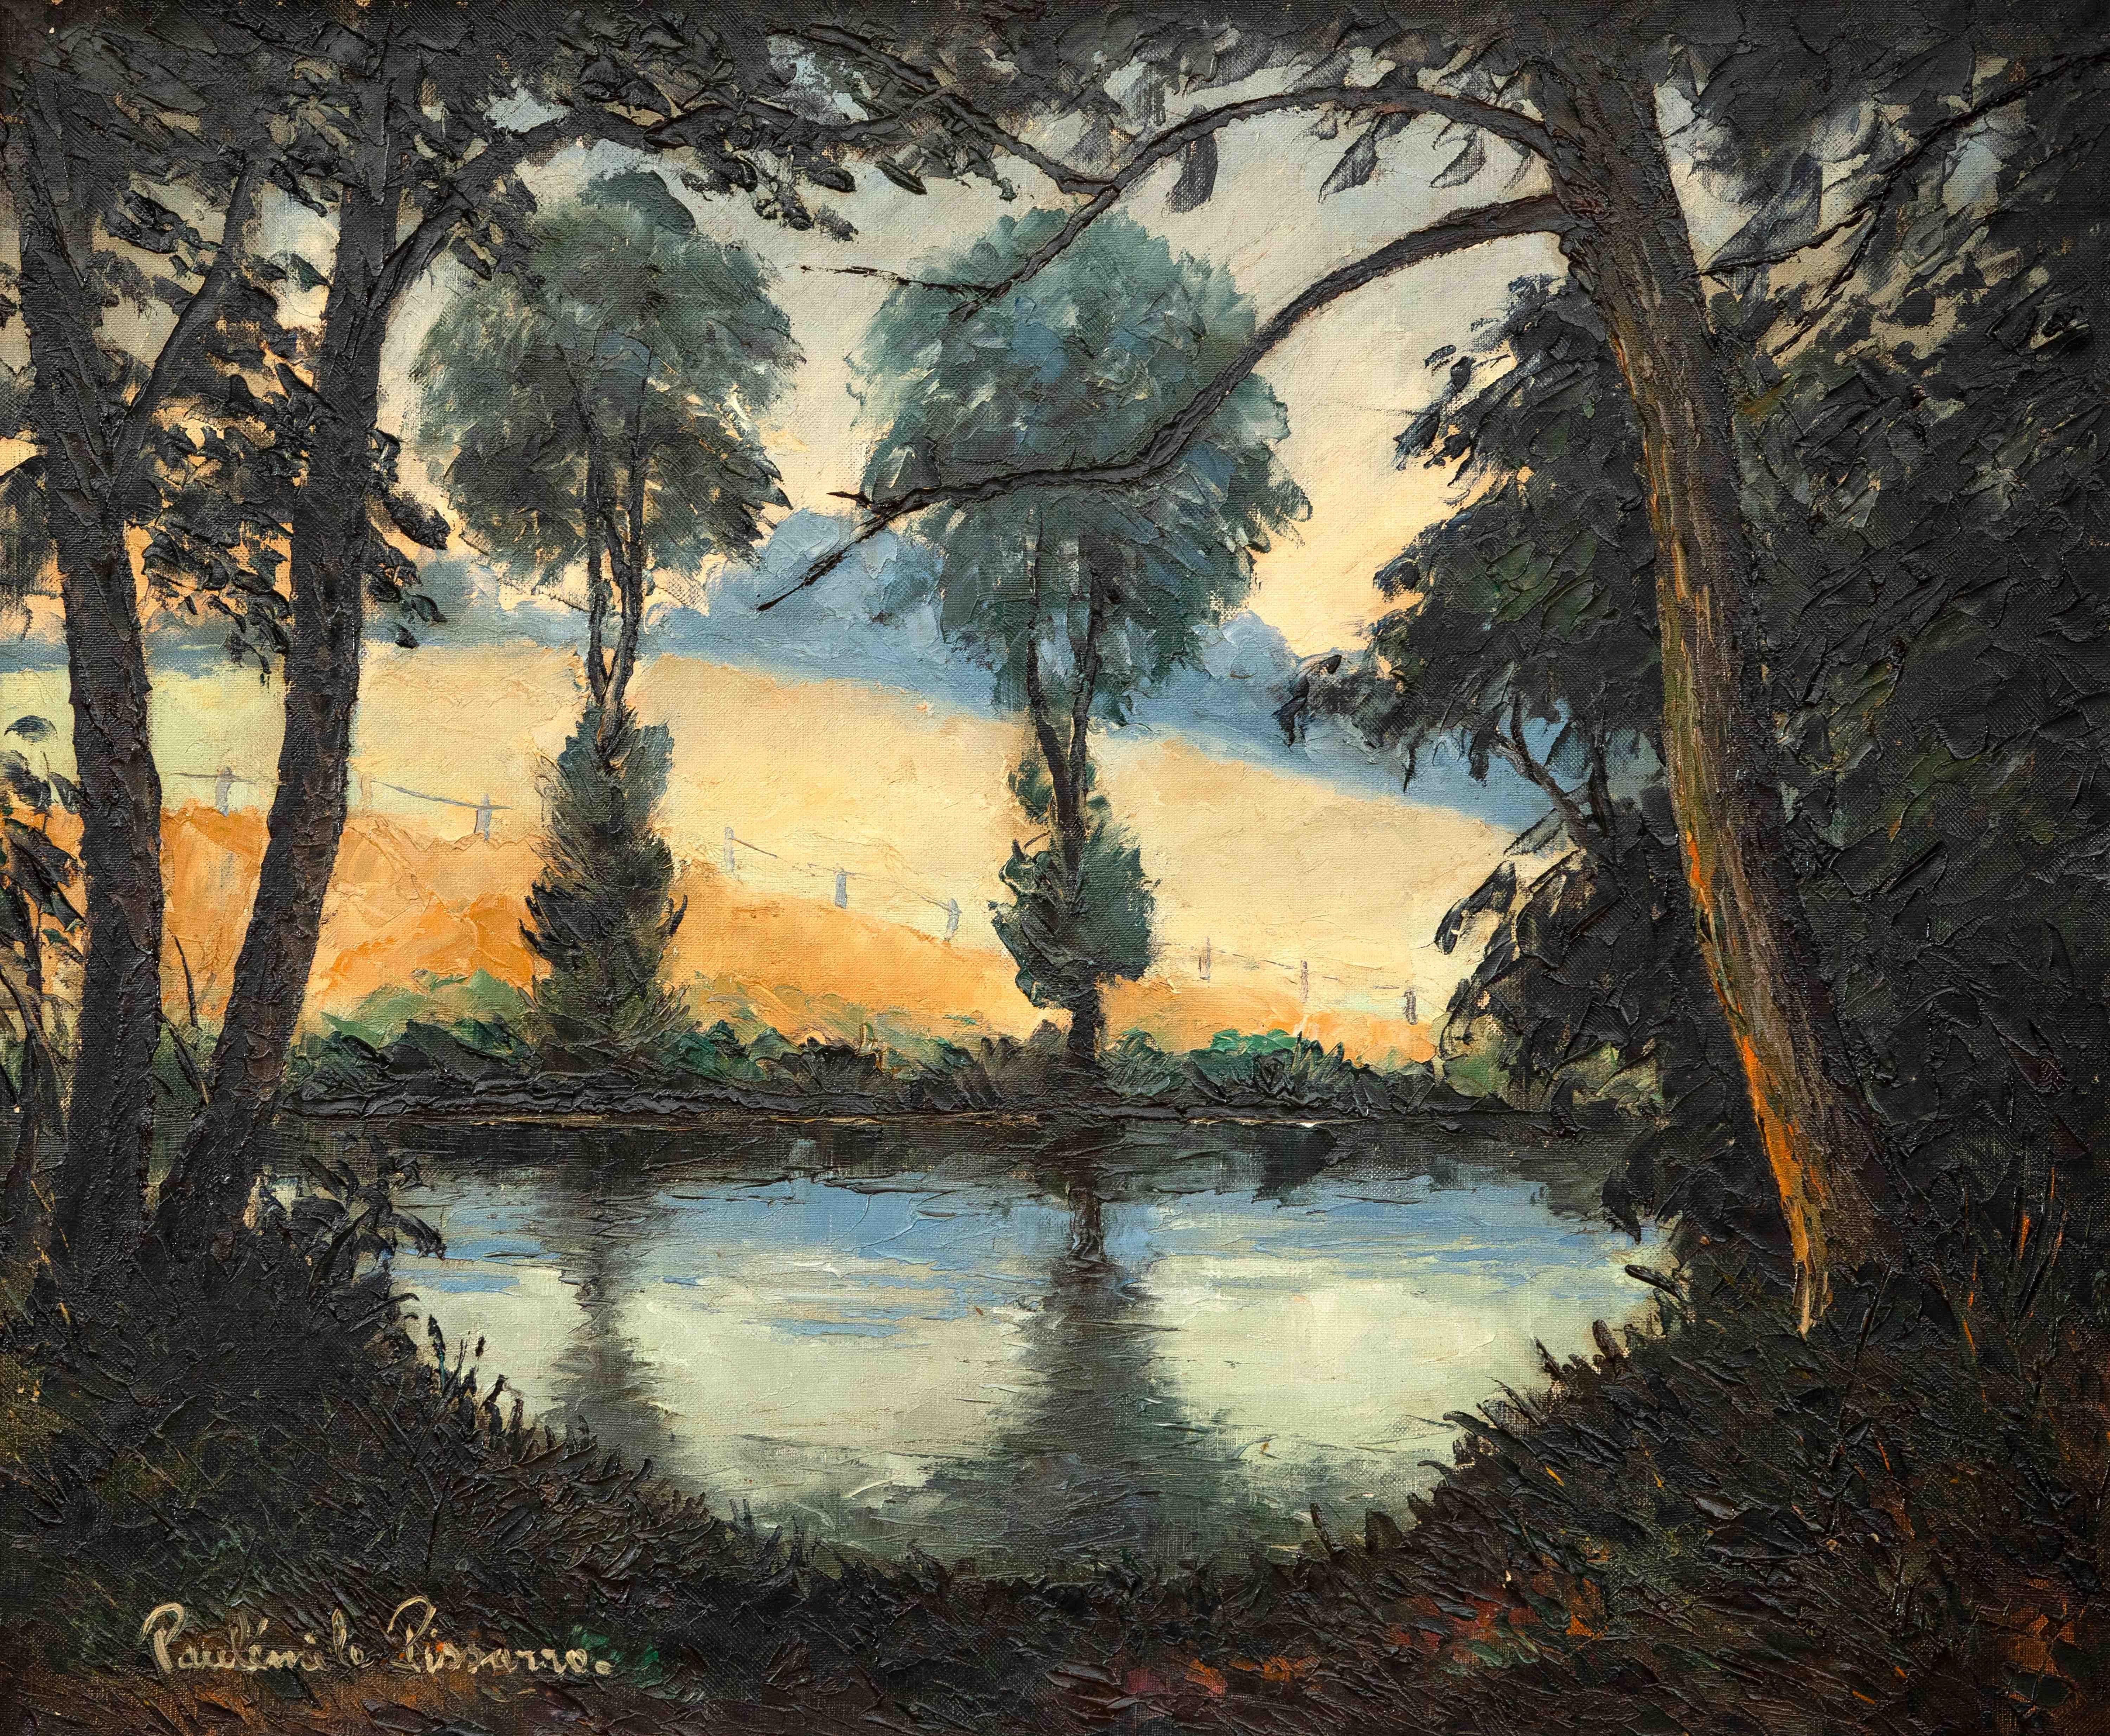 Landscape Painting Paul Emile Pissarro - Les Bords de l'Orne au Soleil Couchant par Paulémile Pissarro -Peinture de paysage